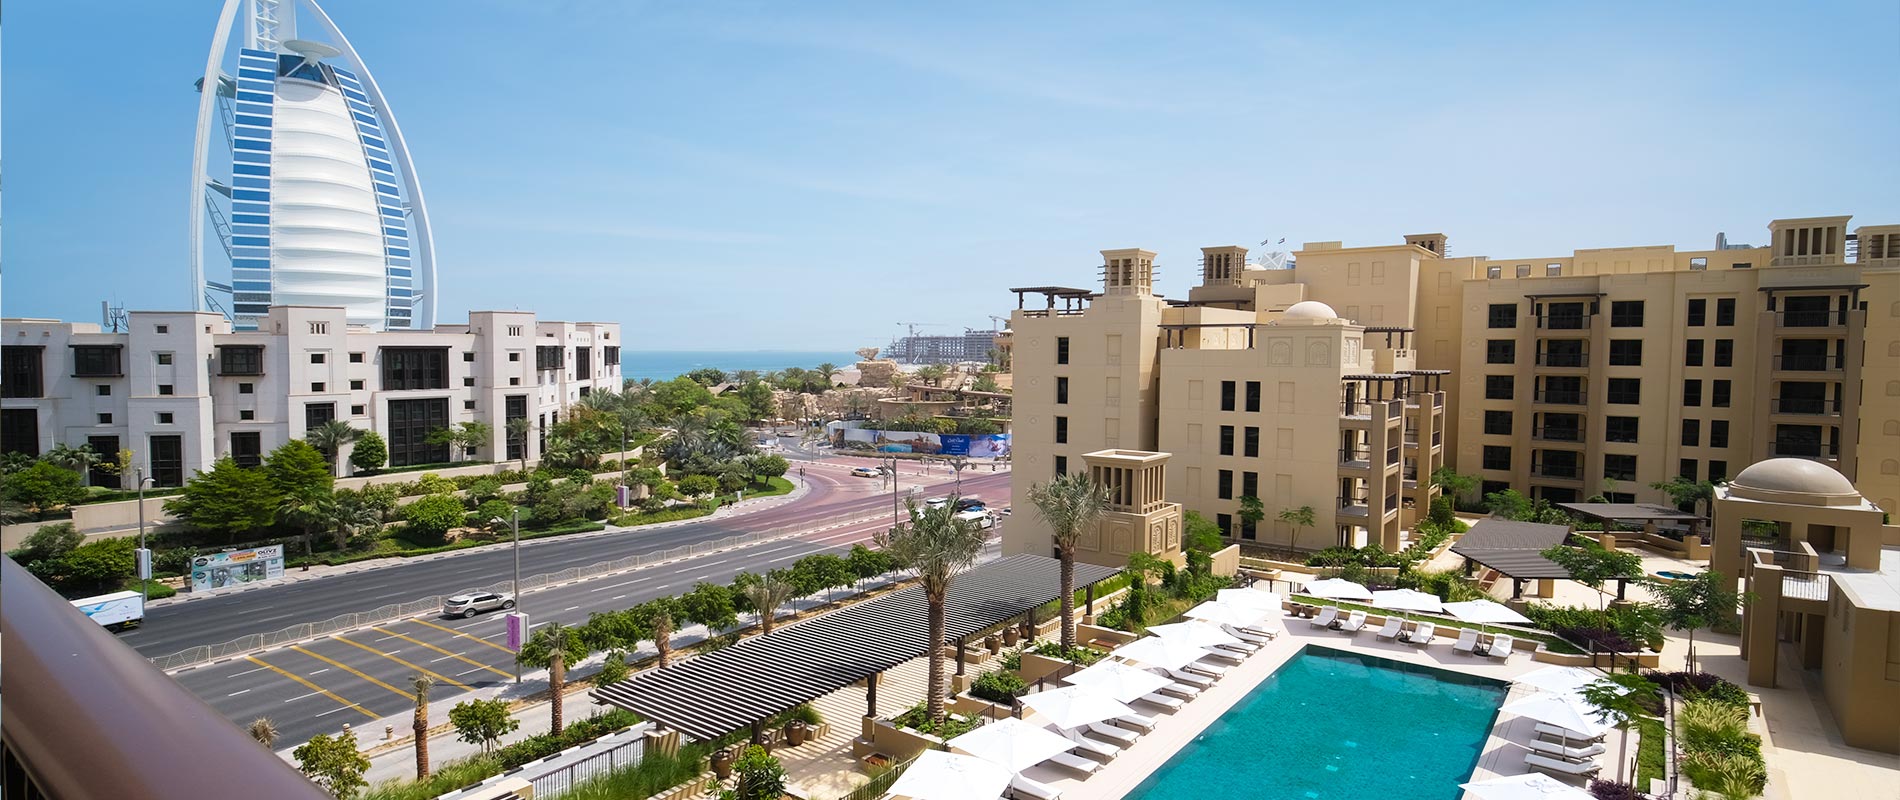 Madinat Jumeirah Living Prices - MJL Apartments Dubai.